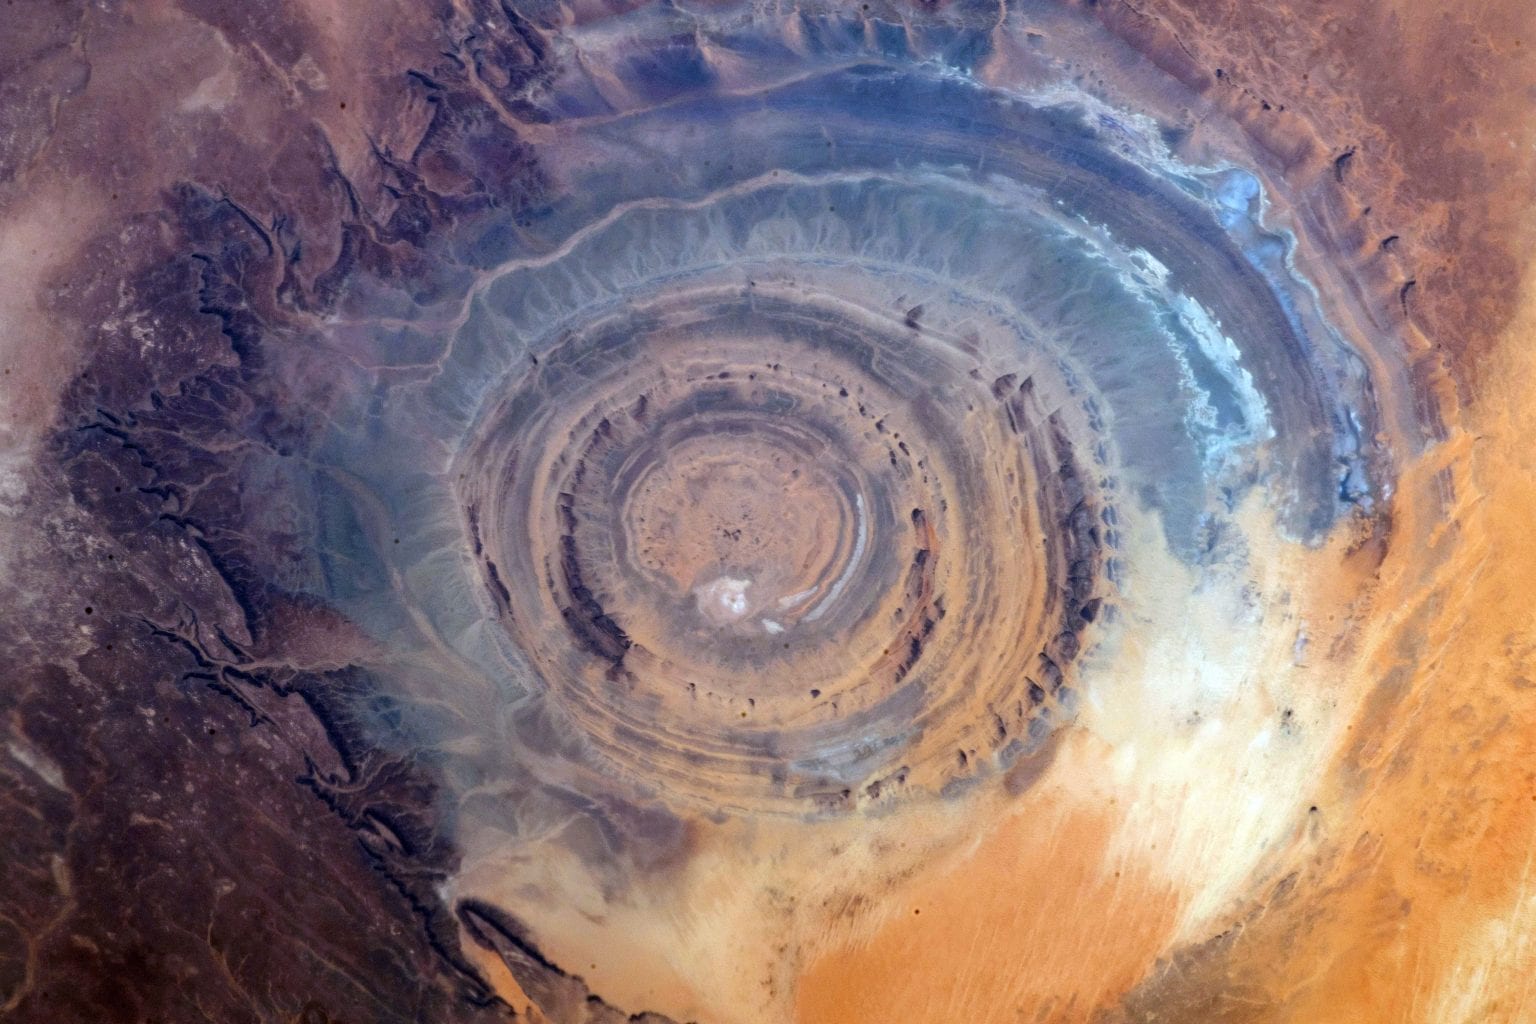 Еще один увлекательный снимок Глаза Сахары из космоса. Предоставлено: НАСА / Лаборатория реактивного движения - Калтех. 